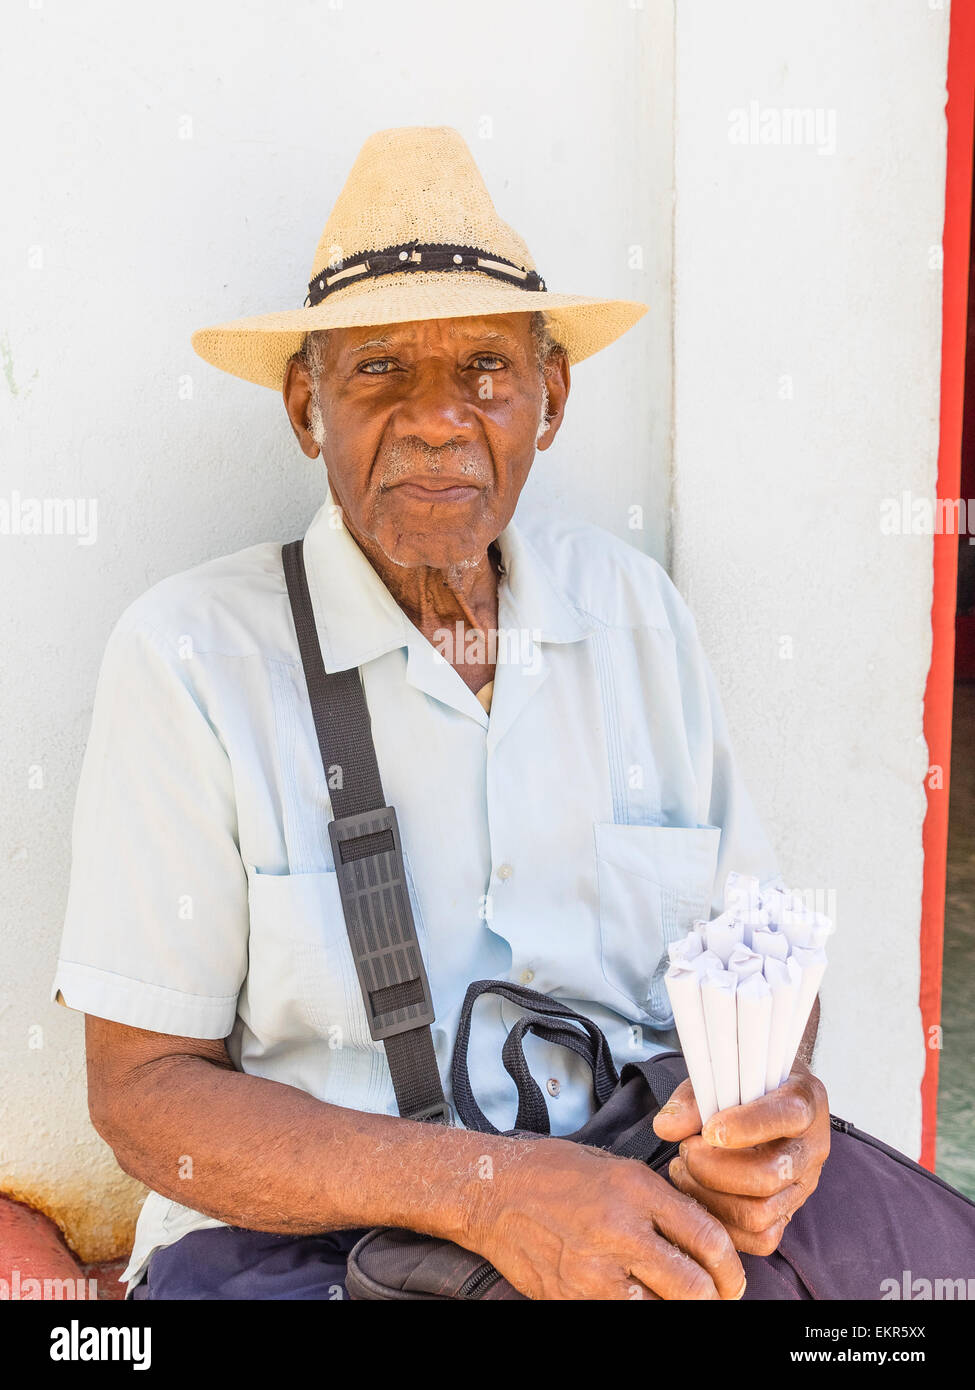 Head and shoulders portrait of a Senior citizen afro-cubaine la vente d'arachides dans les cônes en papier traditionnel chapeau de paille. Banque D'Images